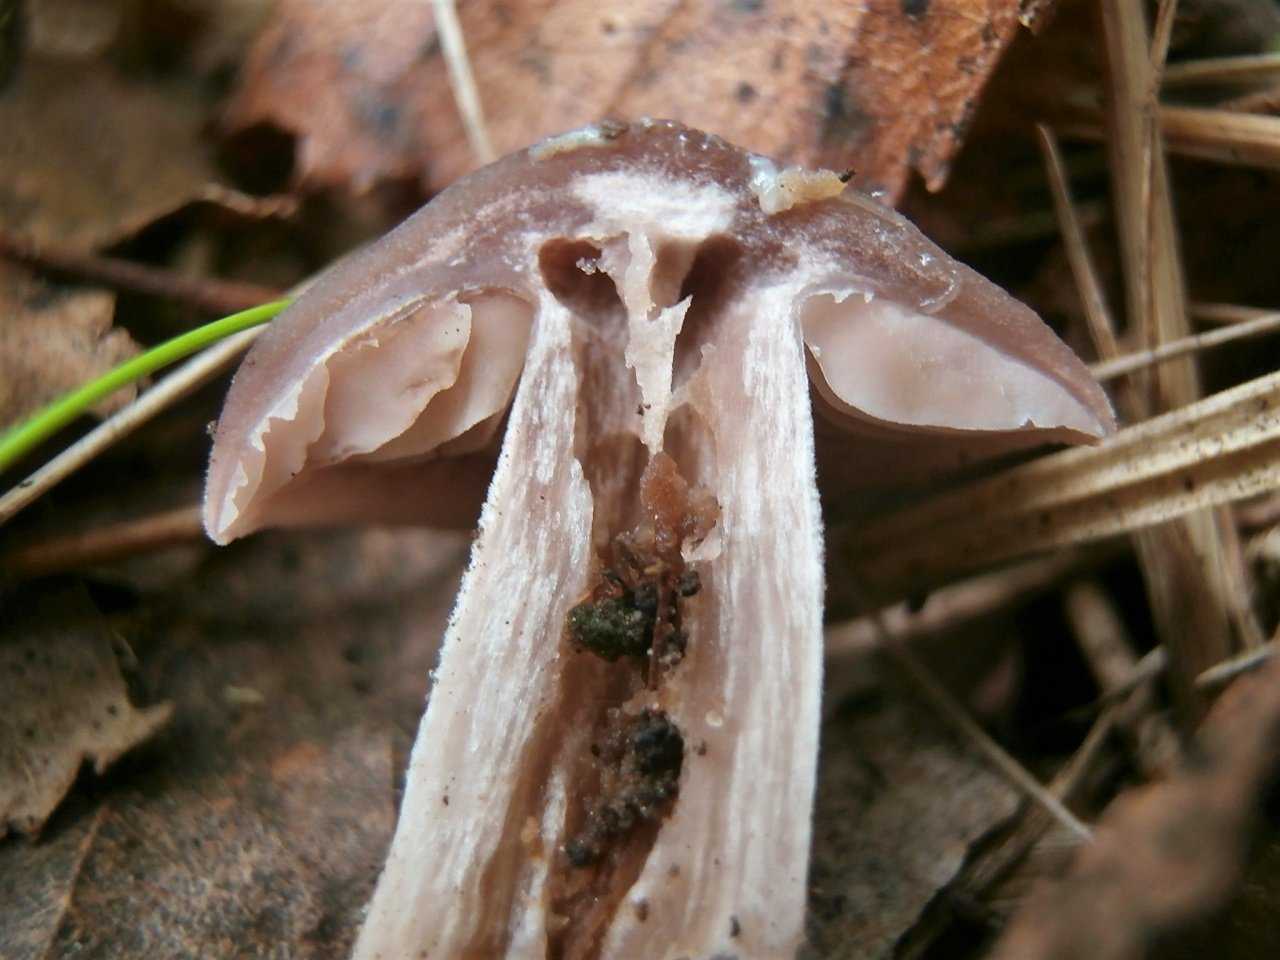 Строчок обыкновенный - фото, описание, съедобный или ядовитый гриб